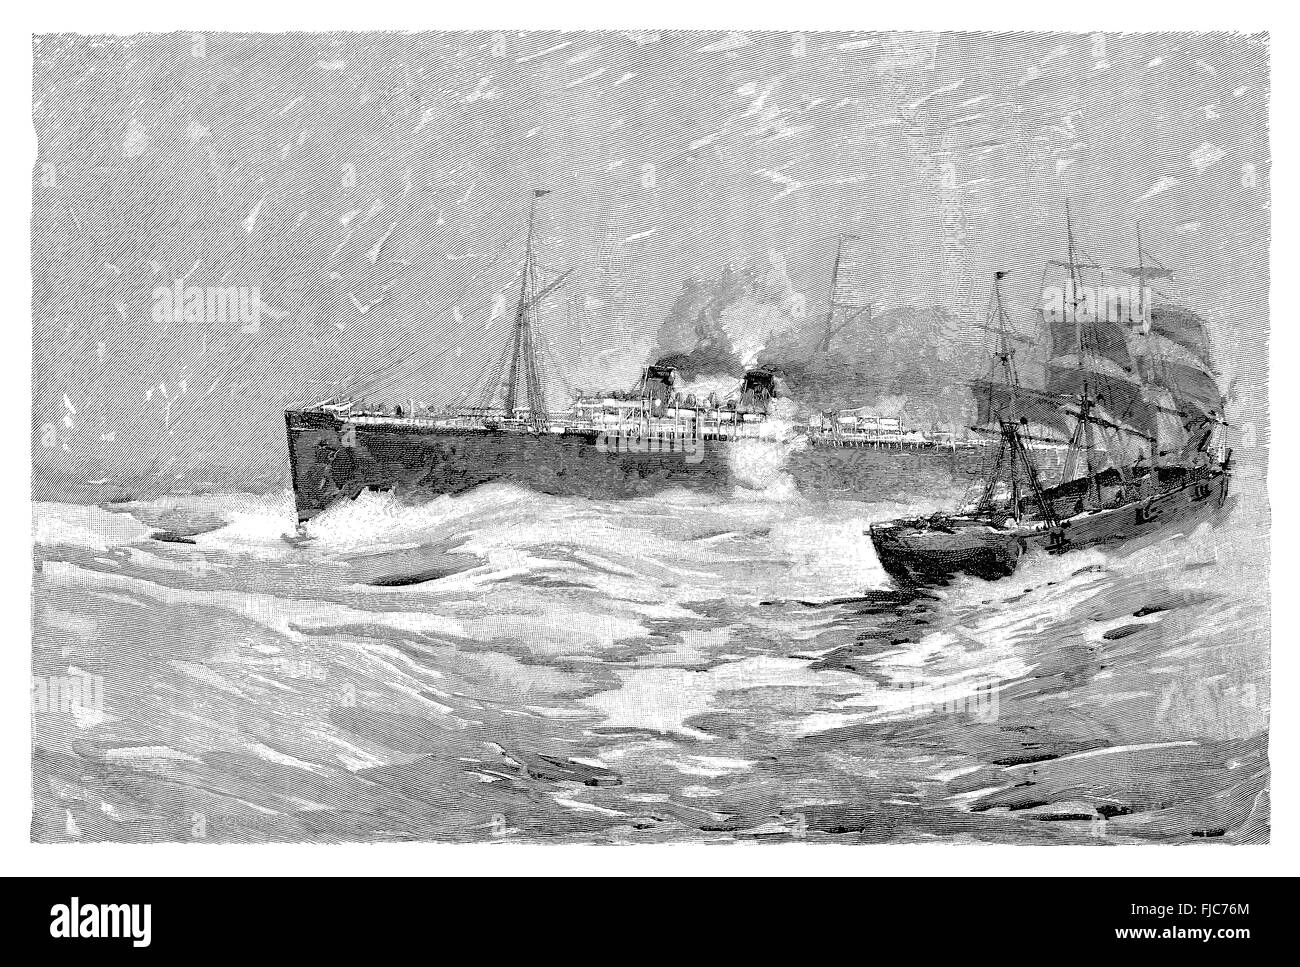 Schwarz / weiß-Gravur der White Star Line Dampfschiff S.S. Majestic vorbei an drei Mast Segelschiff auf hoher See. Stockfoto